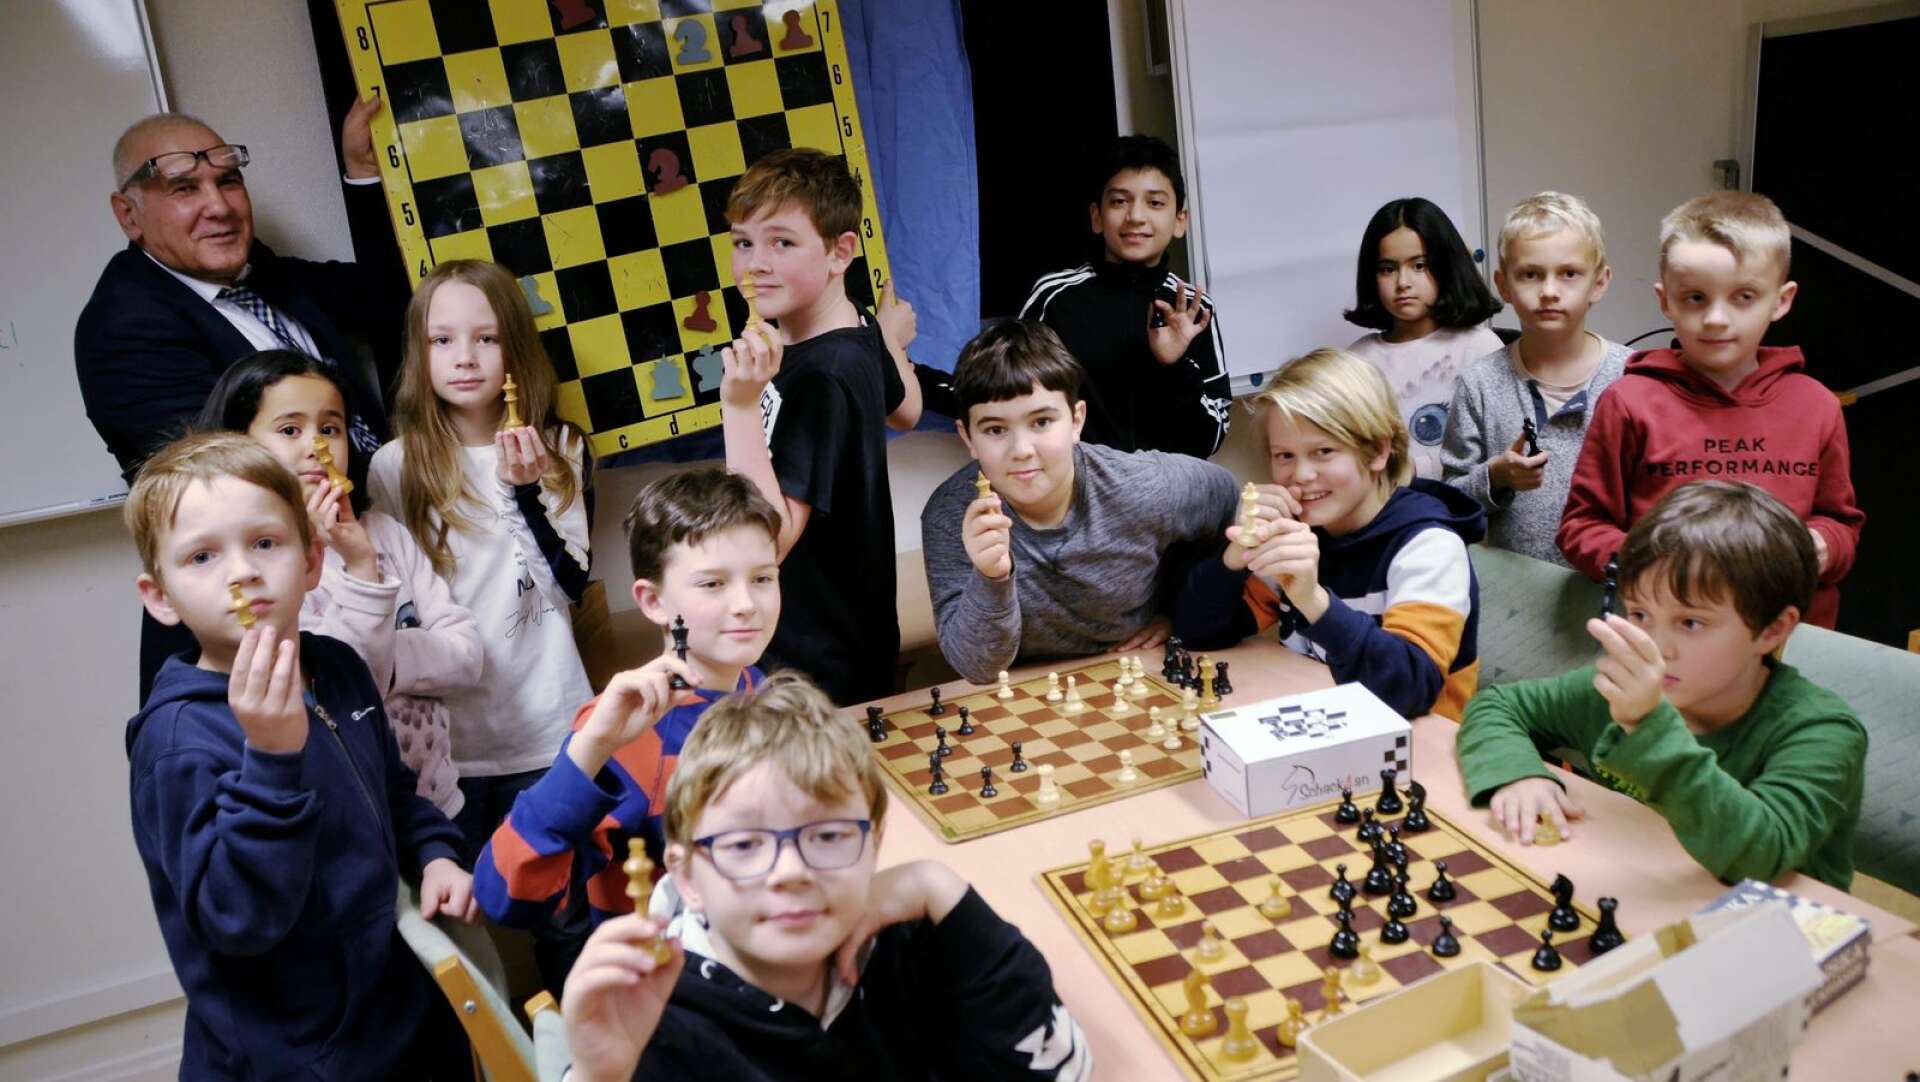 Kulturskolan i Bengtsfors utvidgar under senhösten sitt utbud med några nya kurser. En av dessa är schack, under ledning av Safian Haj Mohamed, själv aktiv schackspelare sedan 40 år tillbaka. Det är en populär satsning som 15 barn har anmält sig till.